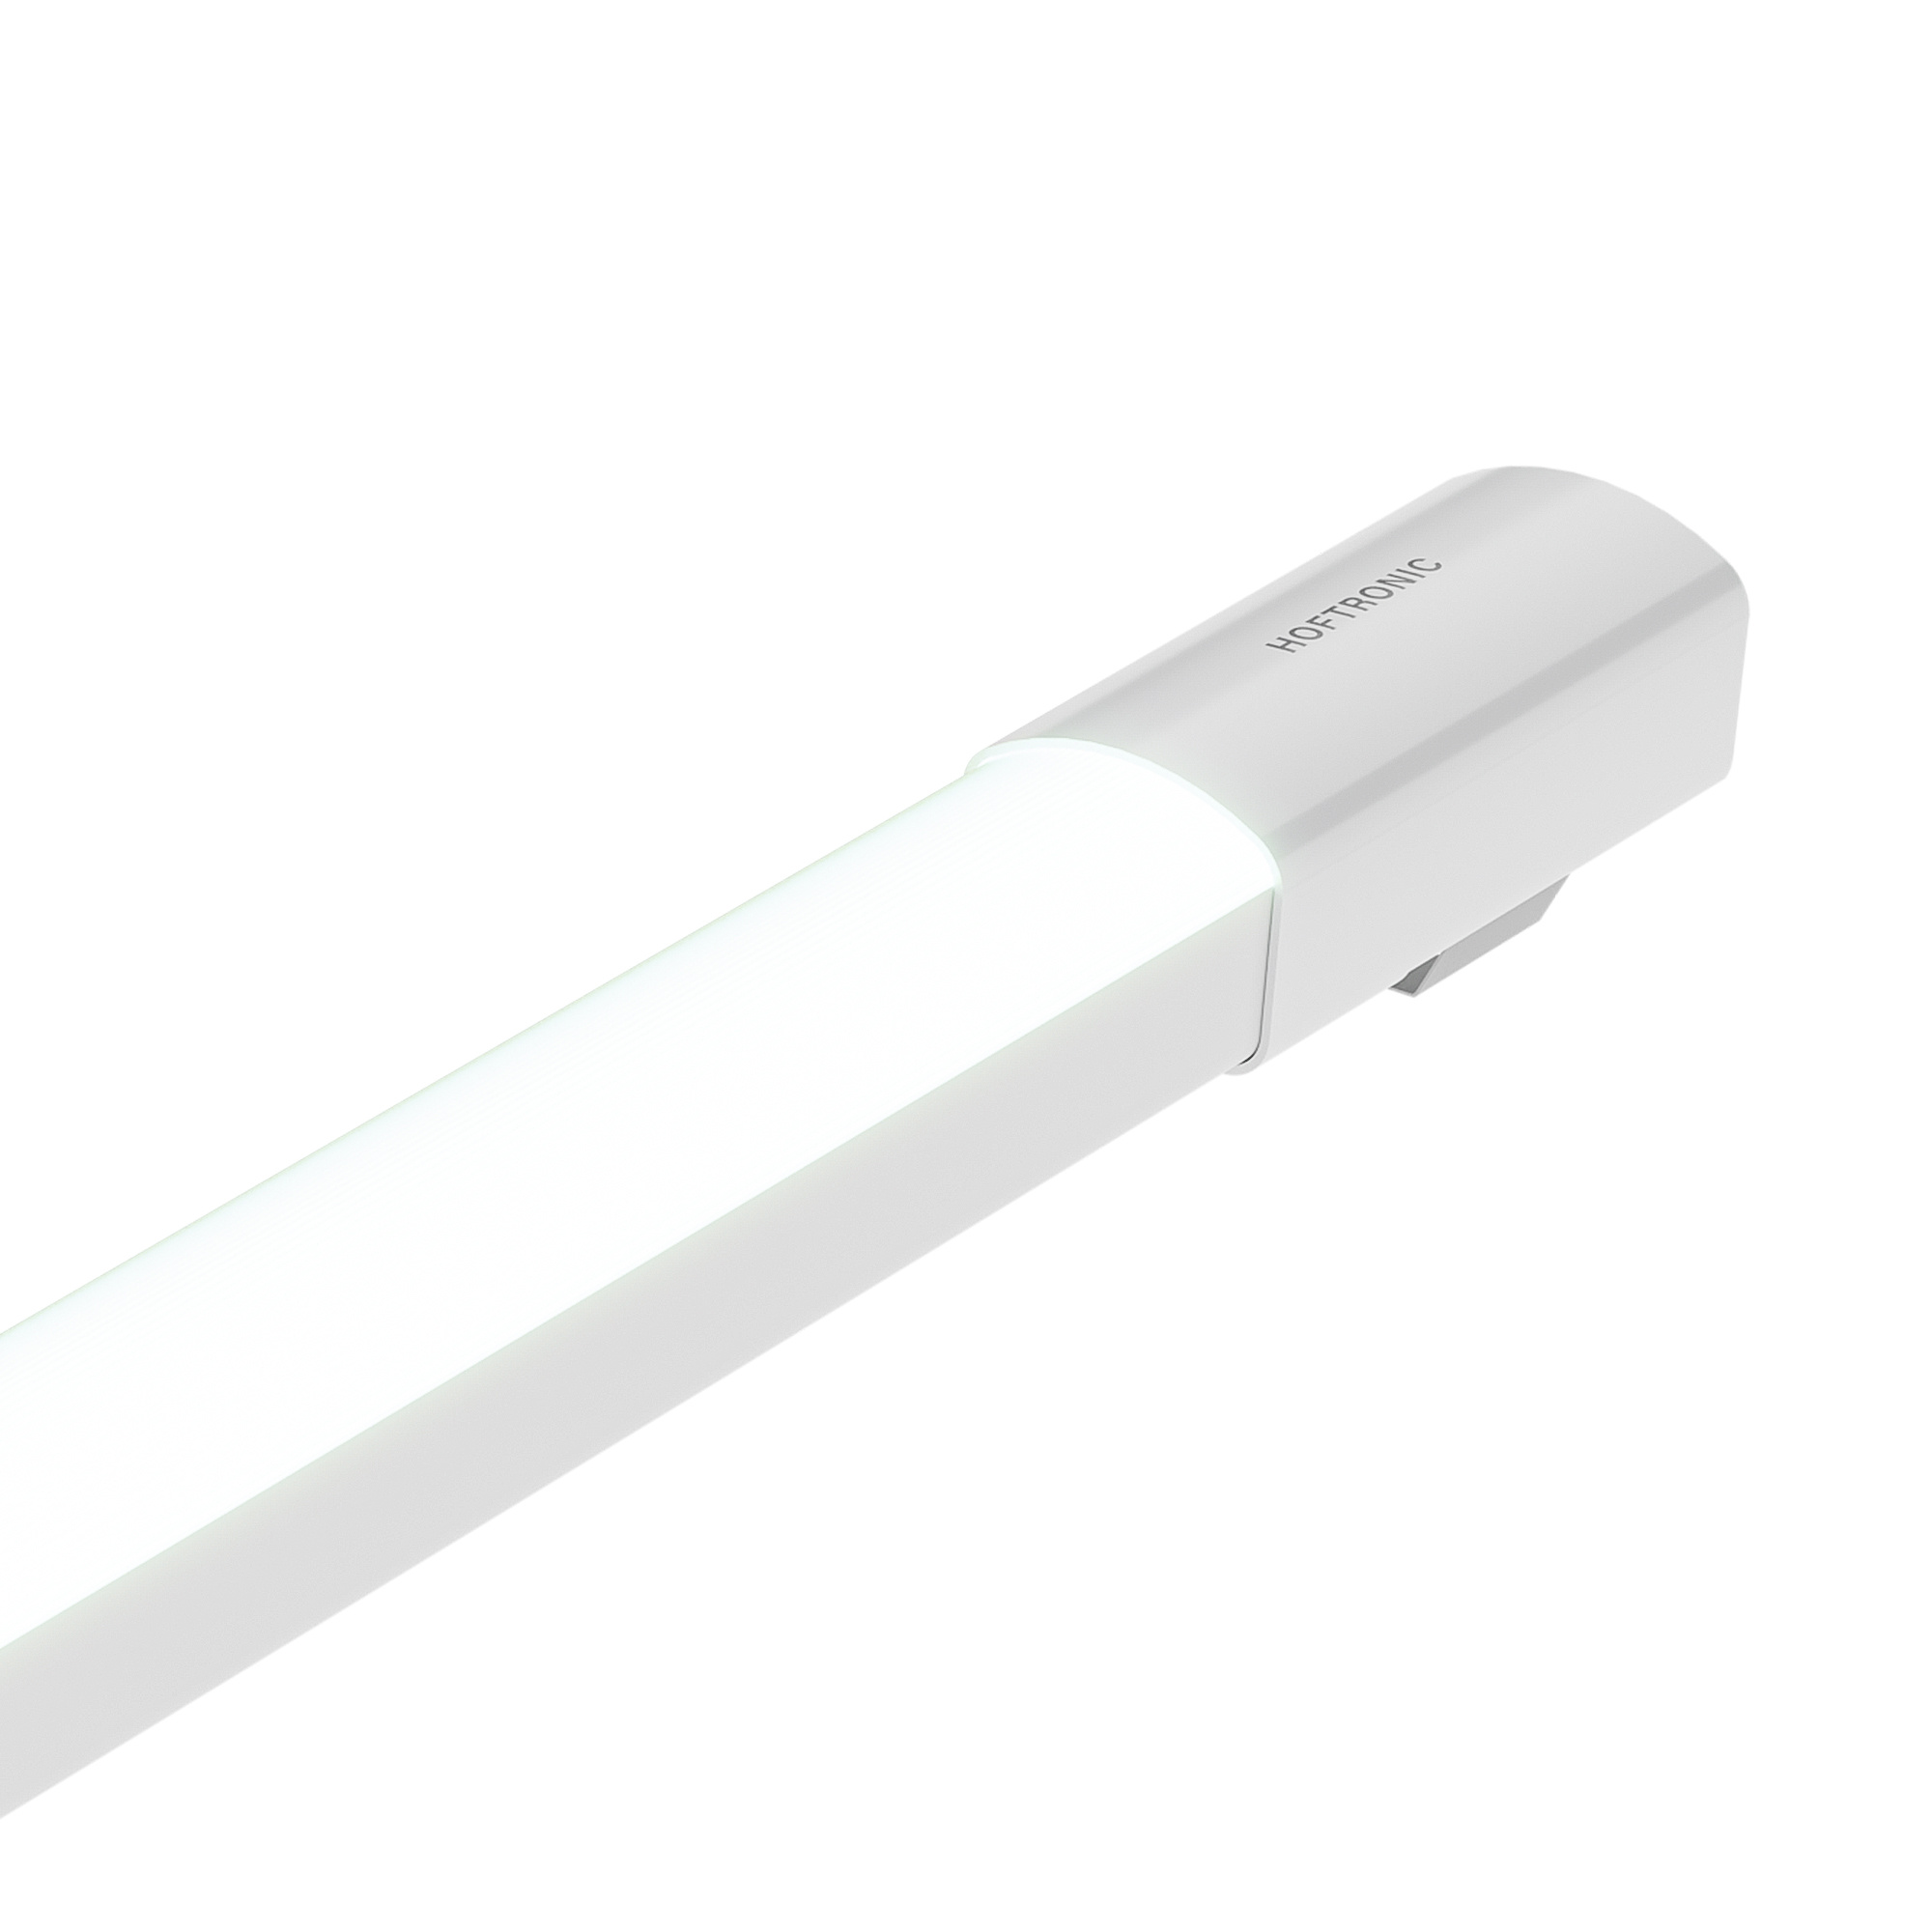 HOFTRONIC™ LED TL Armatuur 150 cm - R-Serie Tri-Proof - IP65 waterdicht - 48 Watt - 4800 Lumen - 100 lumen/watt - 6500K daglicht wit licht - Flikkervrij - Compleet